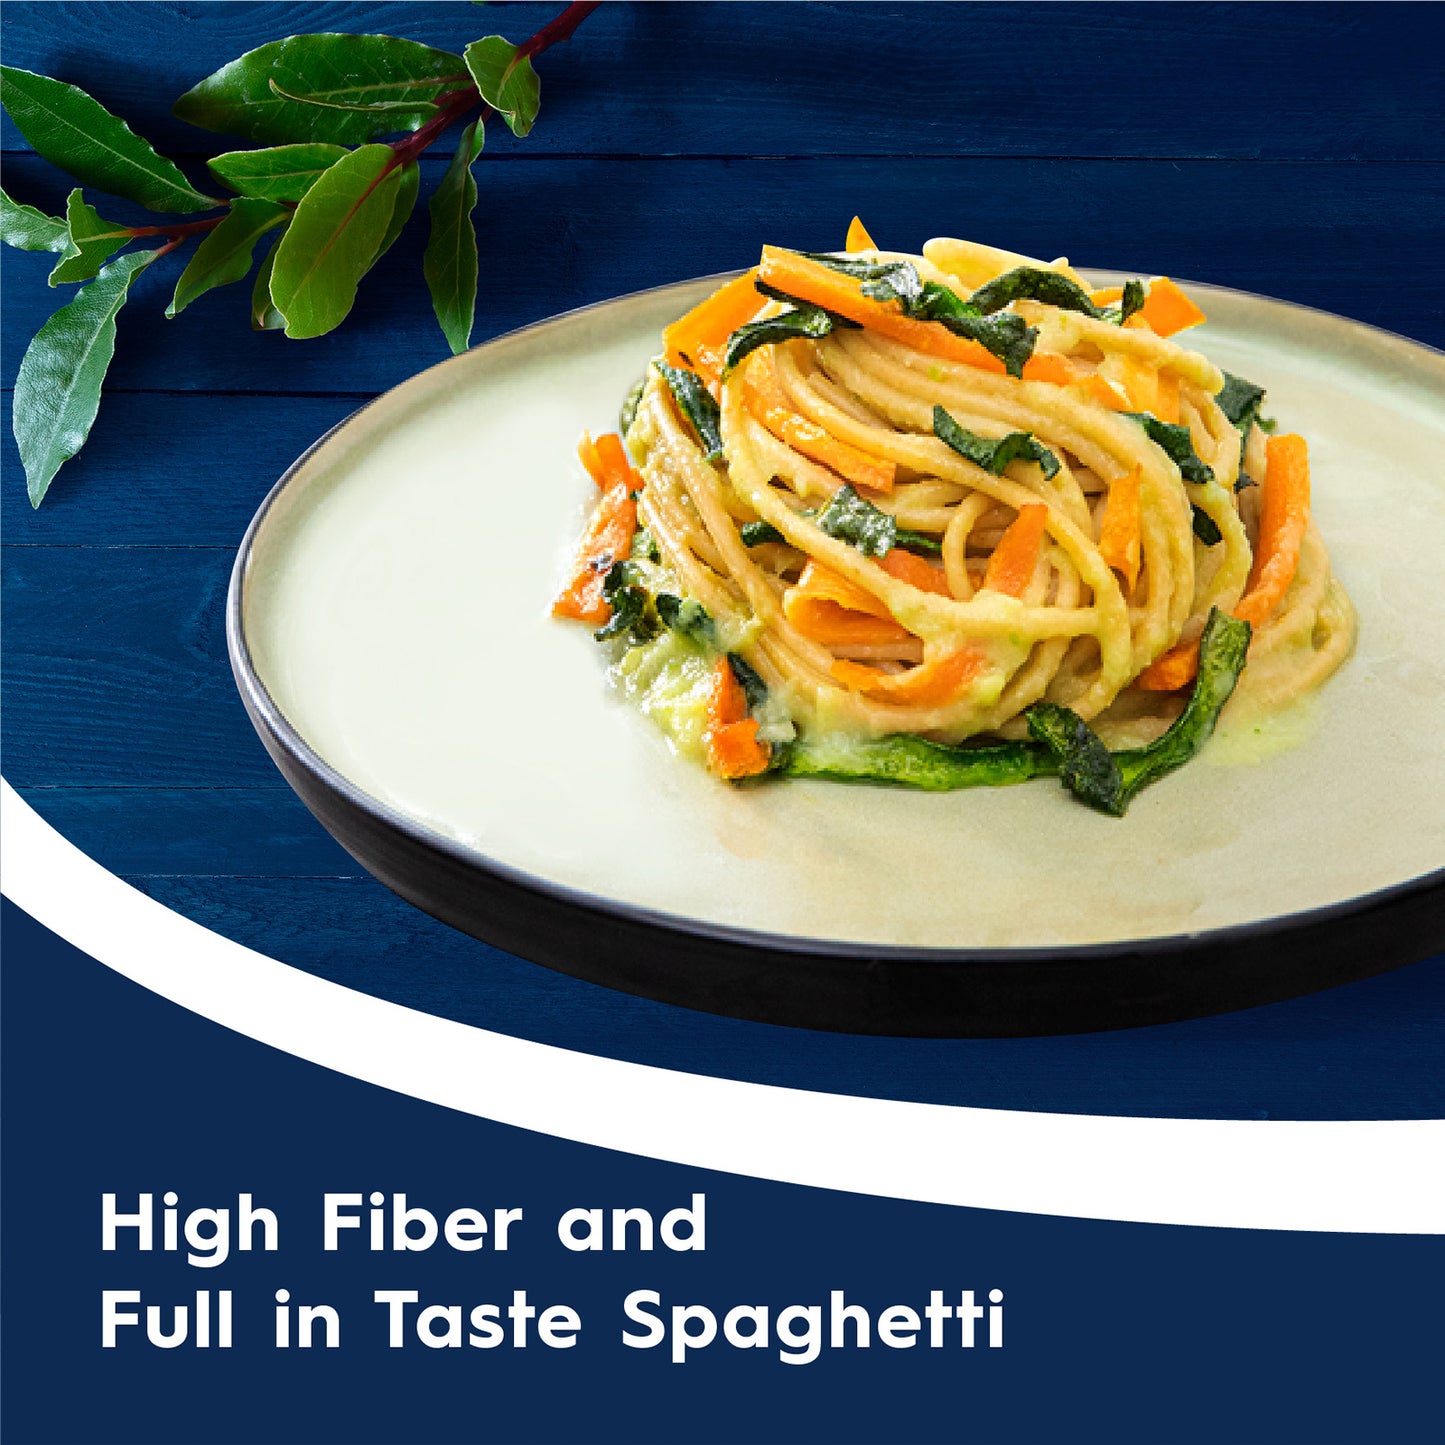 Barilla Pasta Spaghetti Whole Wheat 500g x 2